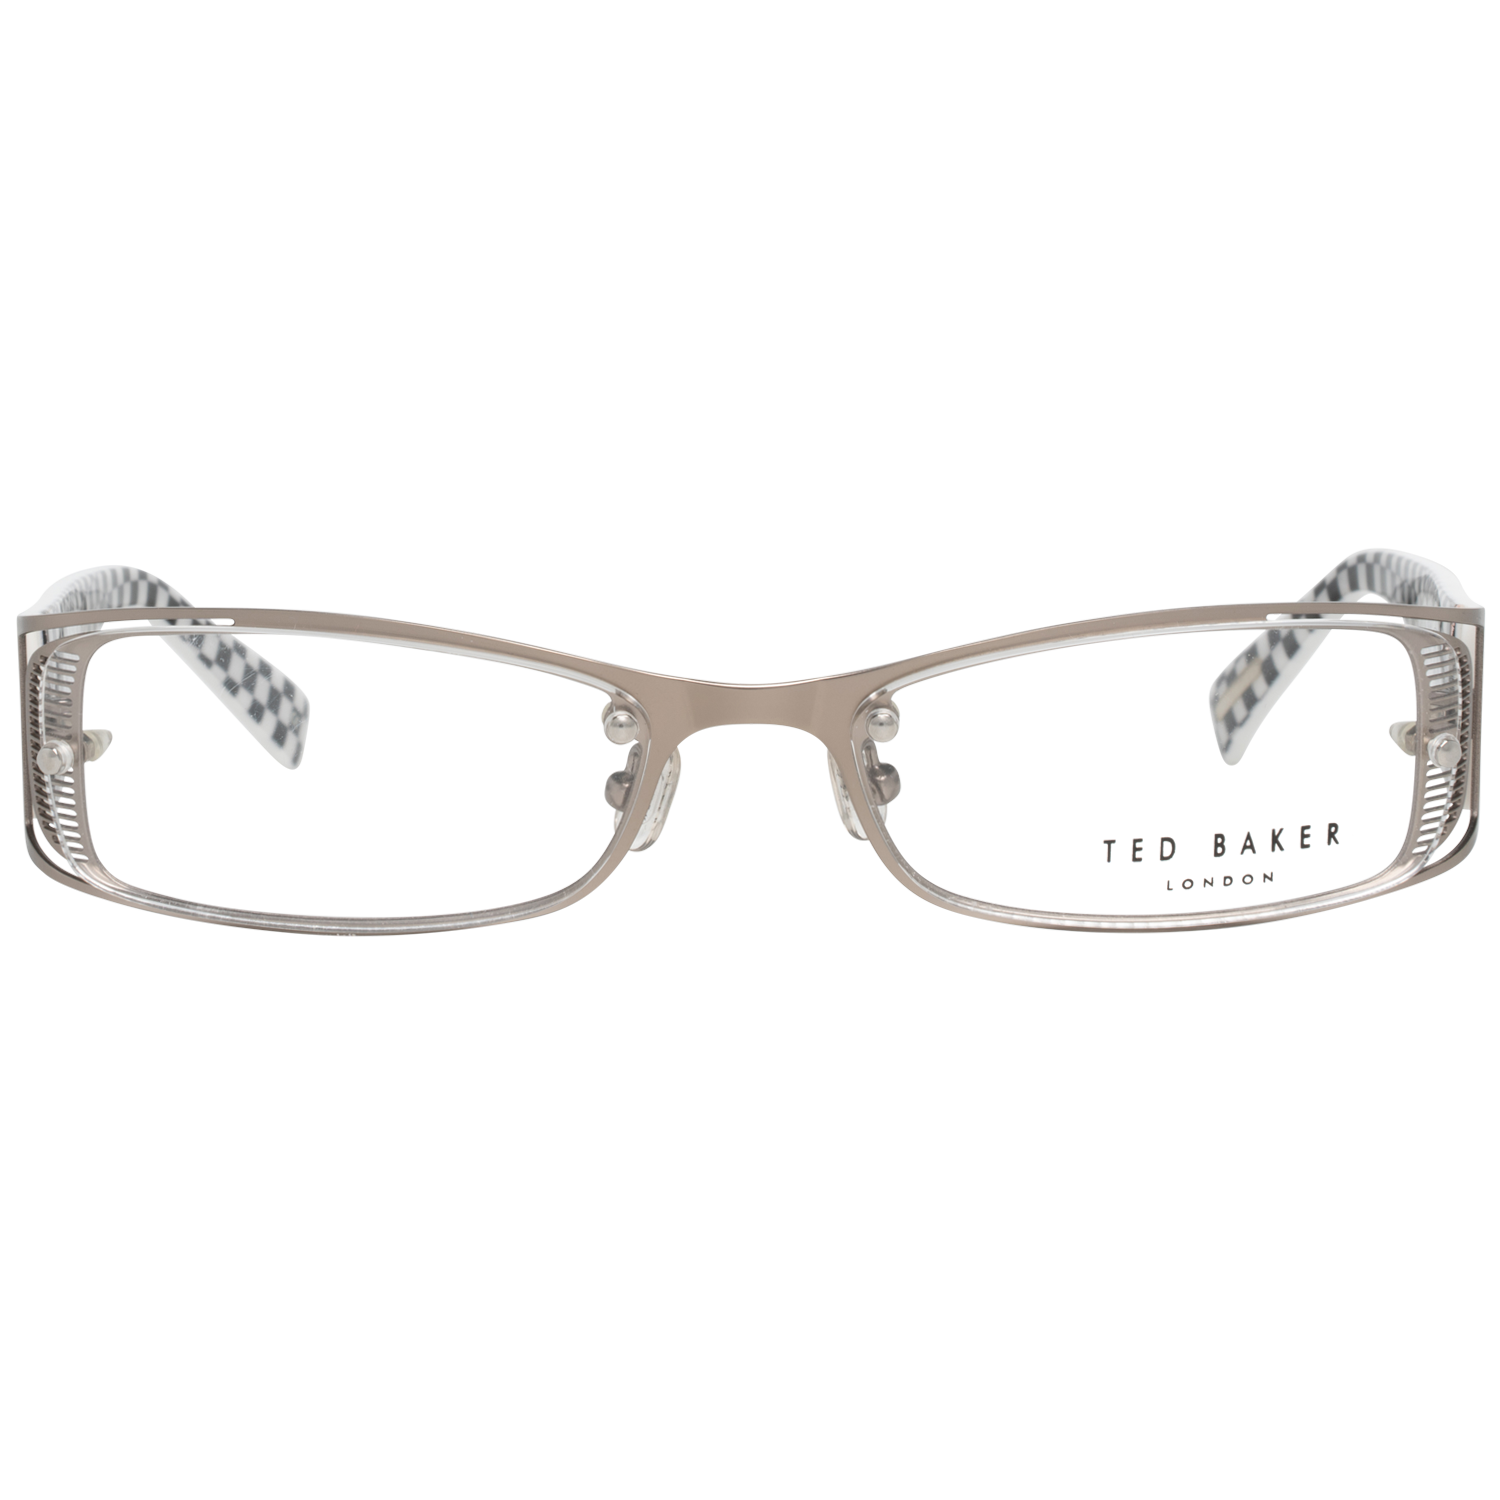 Ted Baker Frames Ted Baker Prescription Glasses Optical Frame TB4135 861 55 Eyeglasses Eyewear UK USA Australia 